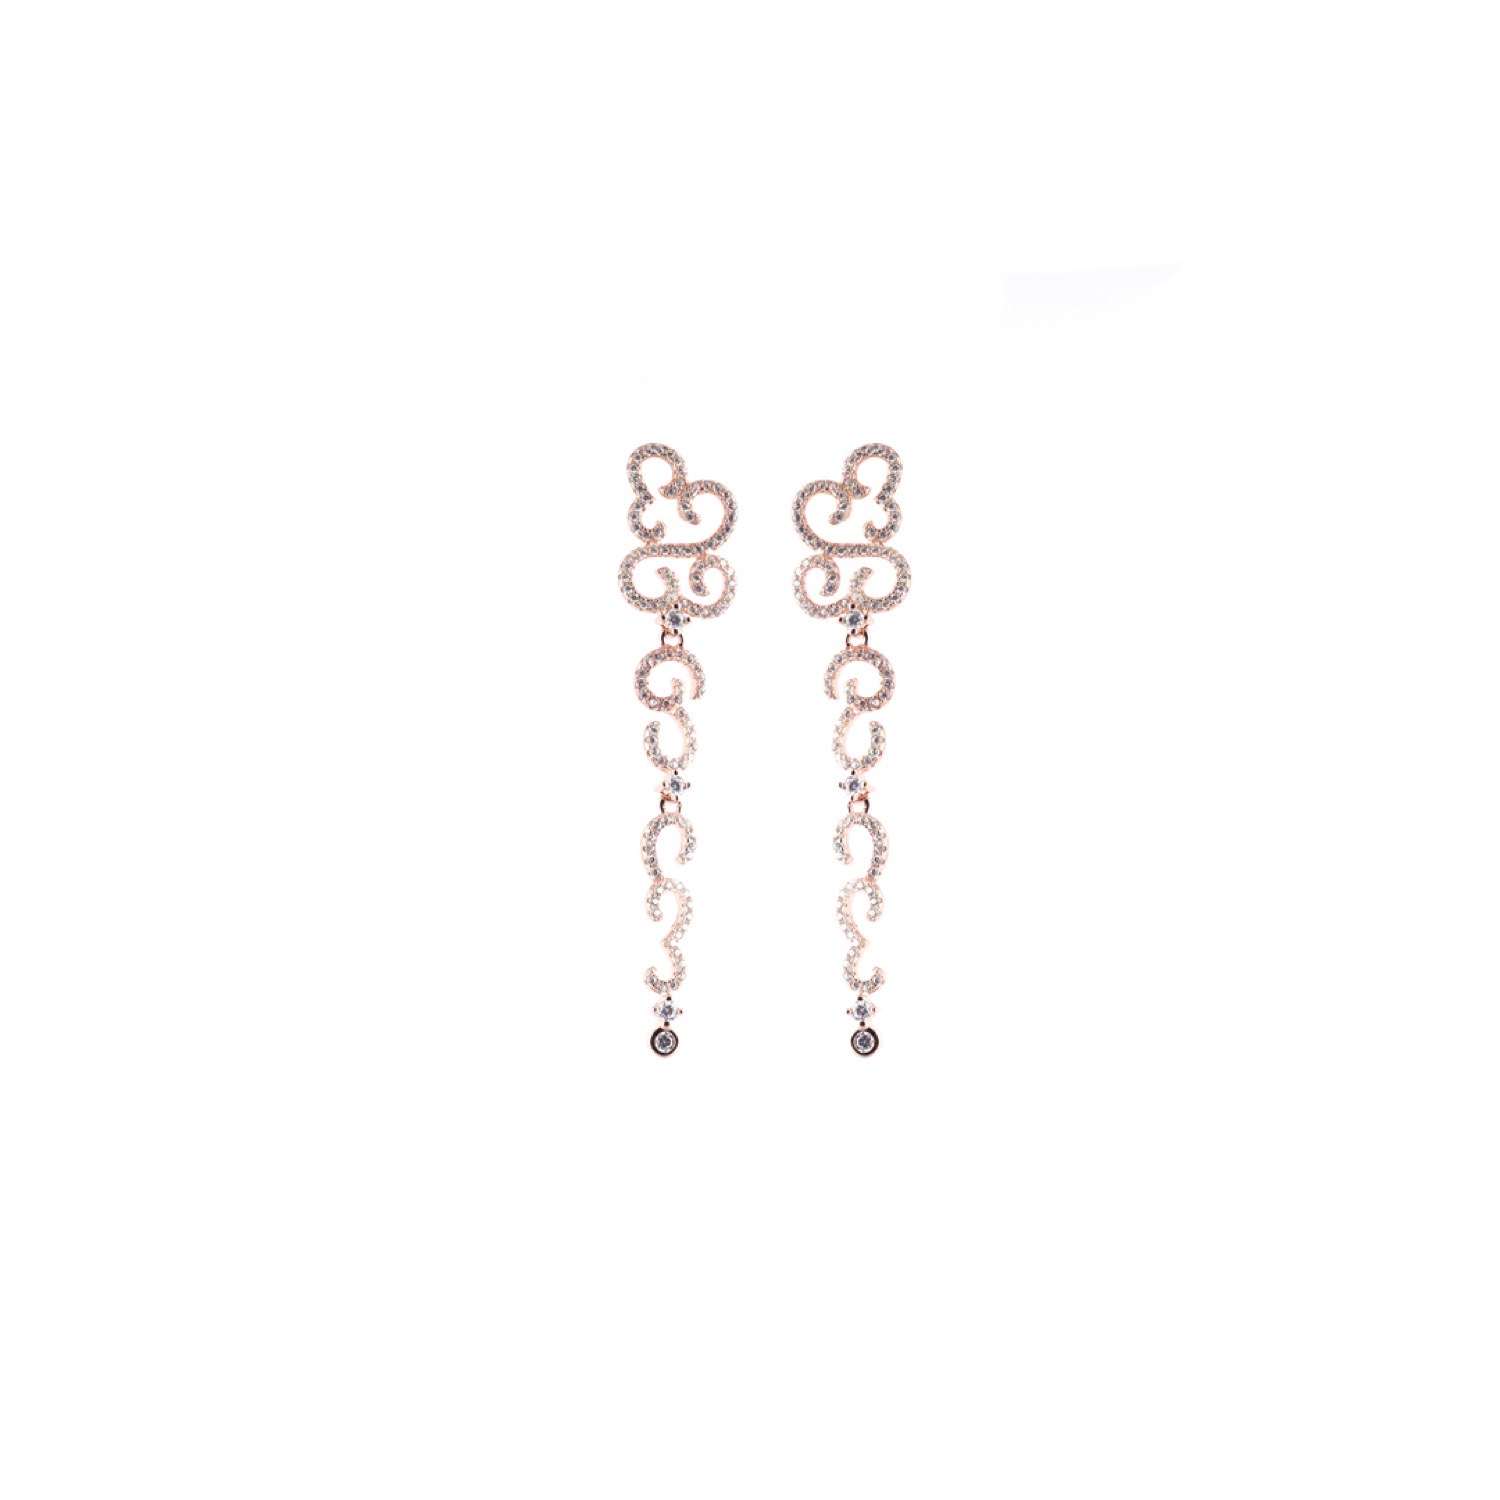 varam_earrings_102022_white_stone_long_studded_dangling_silver_earrings-1